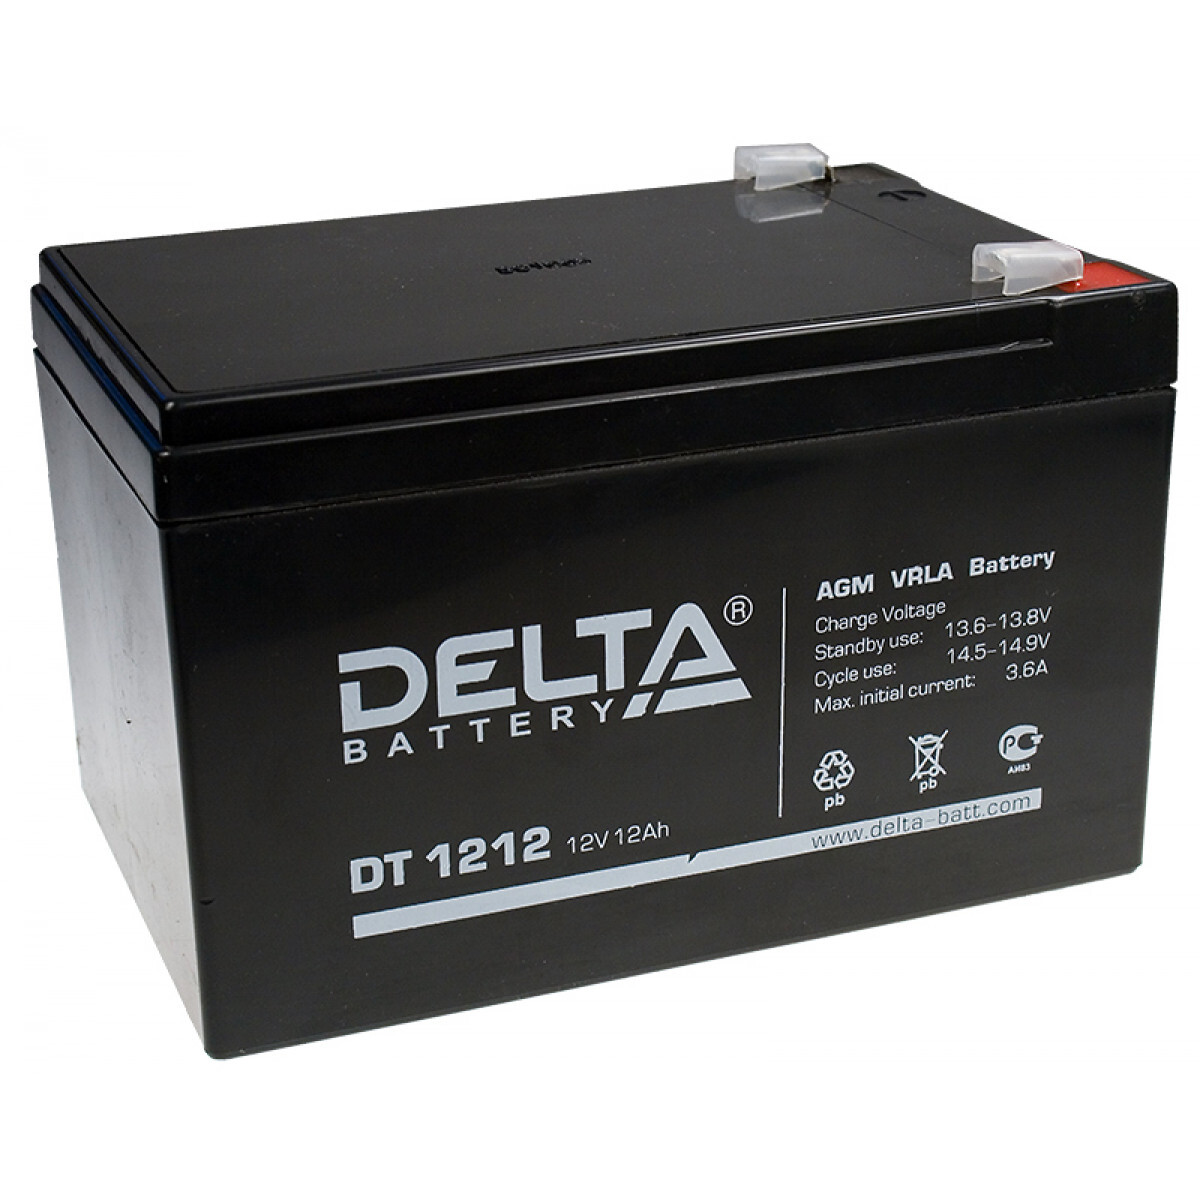 Battery 12 12. Аккумулятор Delta DT 1212. DT 1212 Delta аккумуляторная батарея. Delta DT 1212 (12в/12ач). Delta Battery DT 1212 12в 12 а·ч.